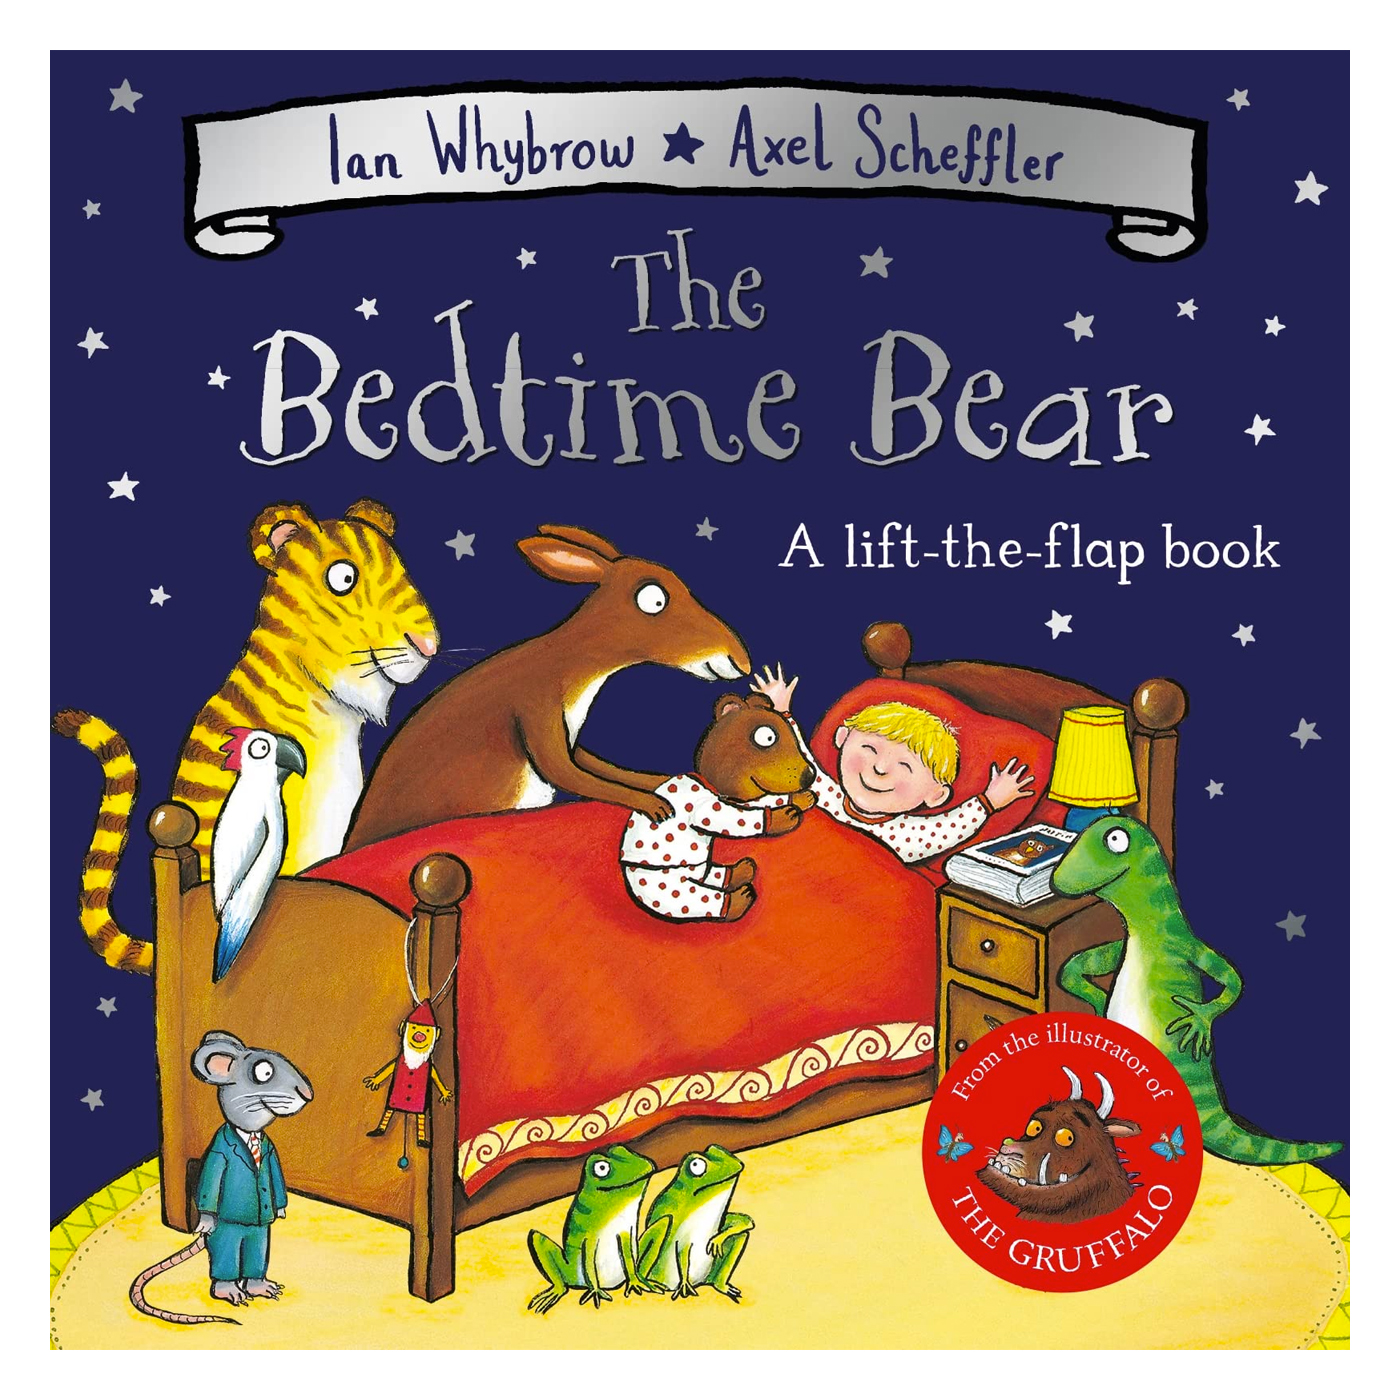  The Bedtime Bear